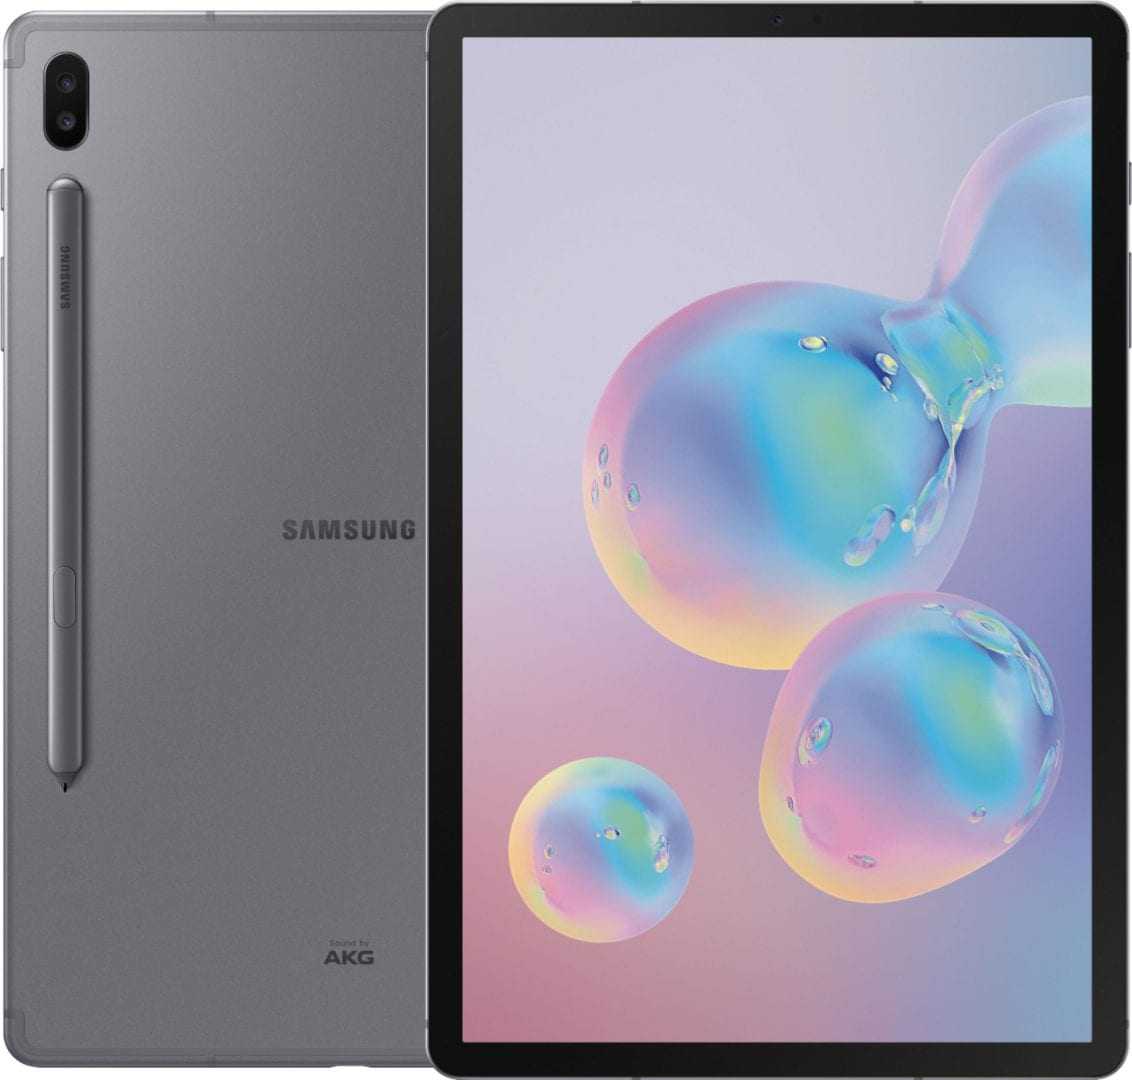 Galaxy Tab S6 Vs 2018 iPad Pro